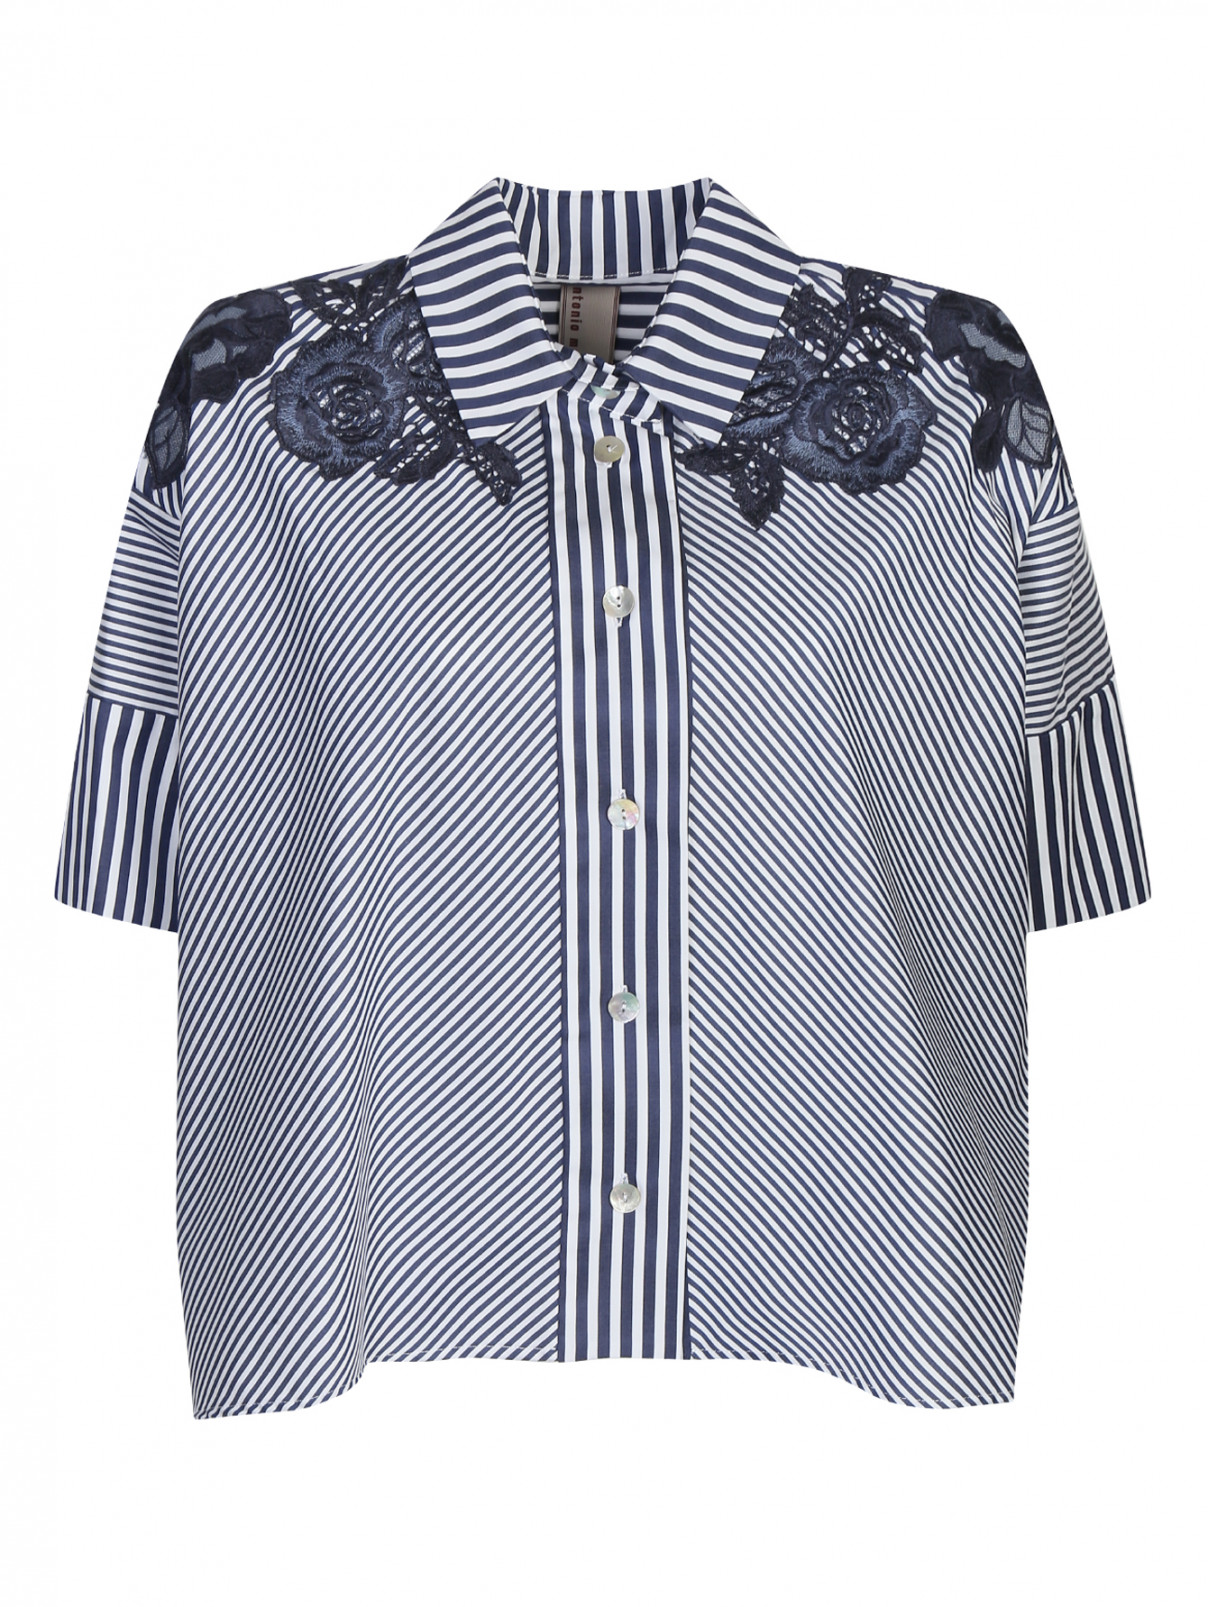 Блуза из хлопка с узором "полоска" Antonio Marras  –  Общий вид  – Цвет:  Синий